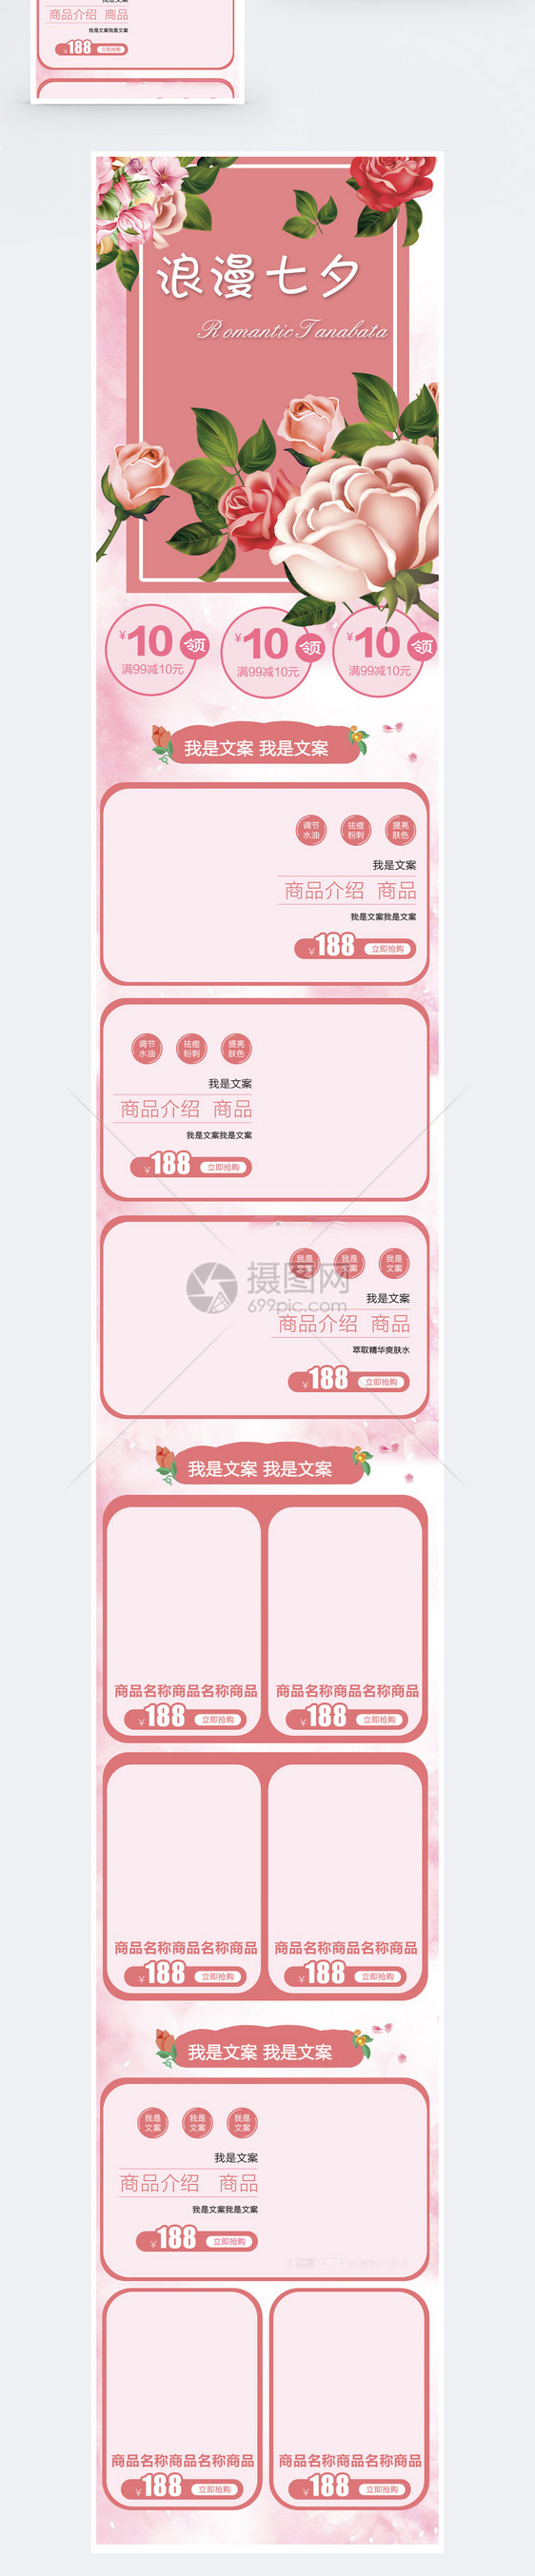 粉红色七夕节日促销淘宝手机端模板图片